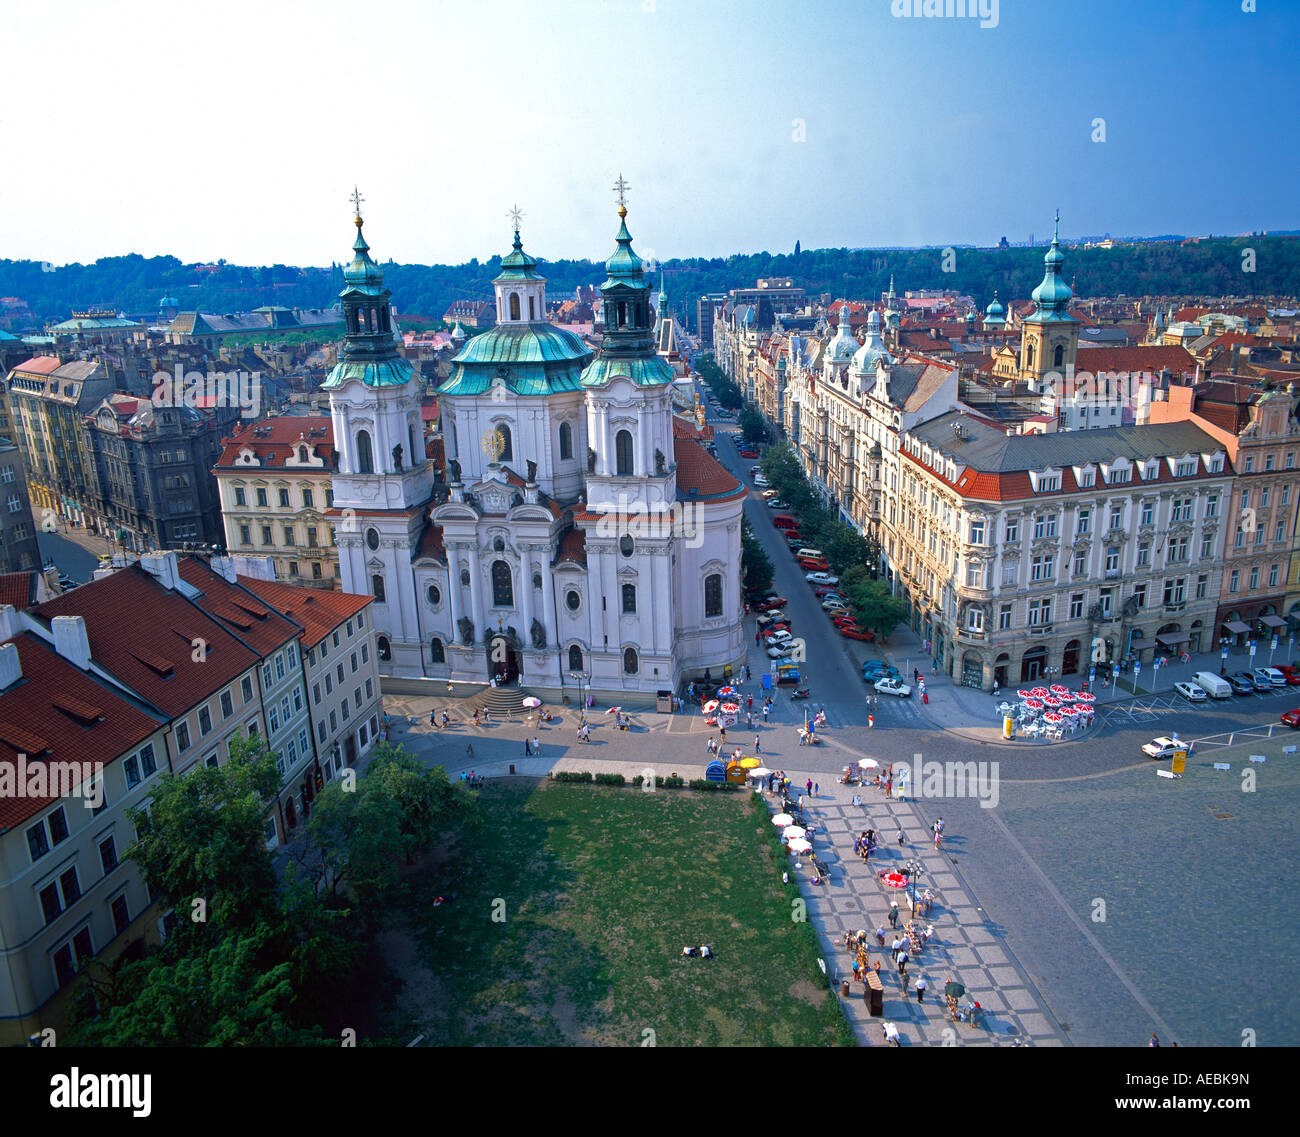 Tschechische Republik Prag St. Nicholas Church mit Altstädter Ring im Vordergrund Stockfoto